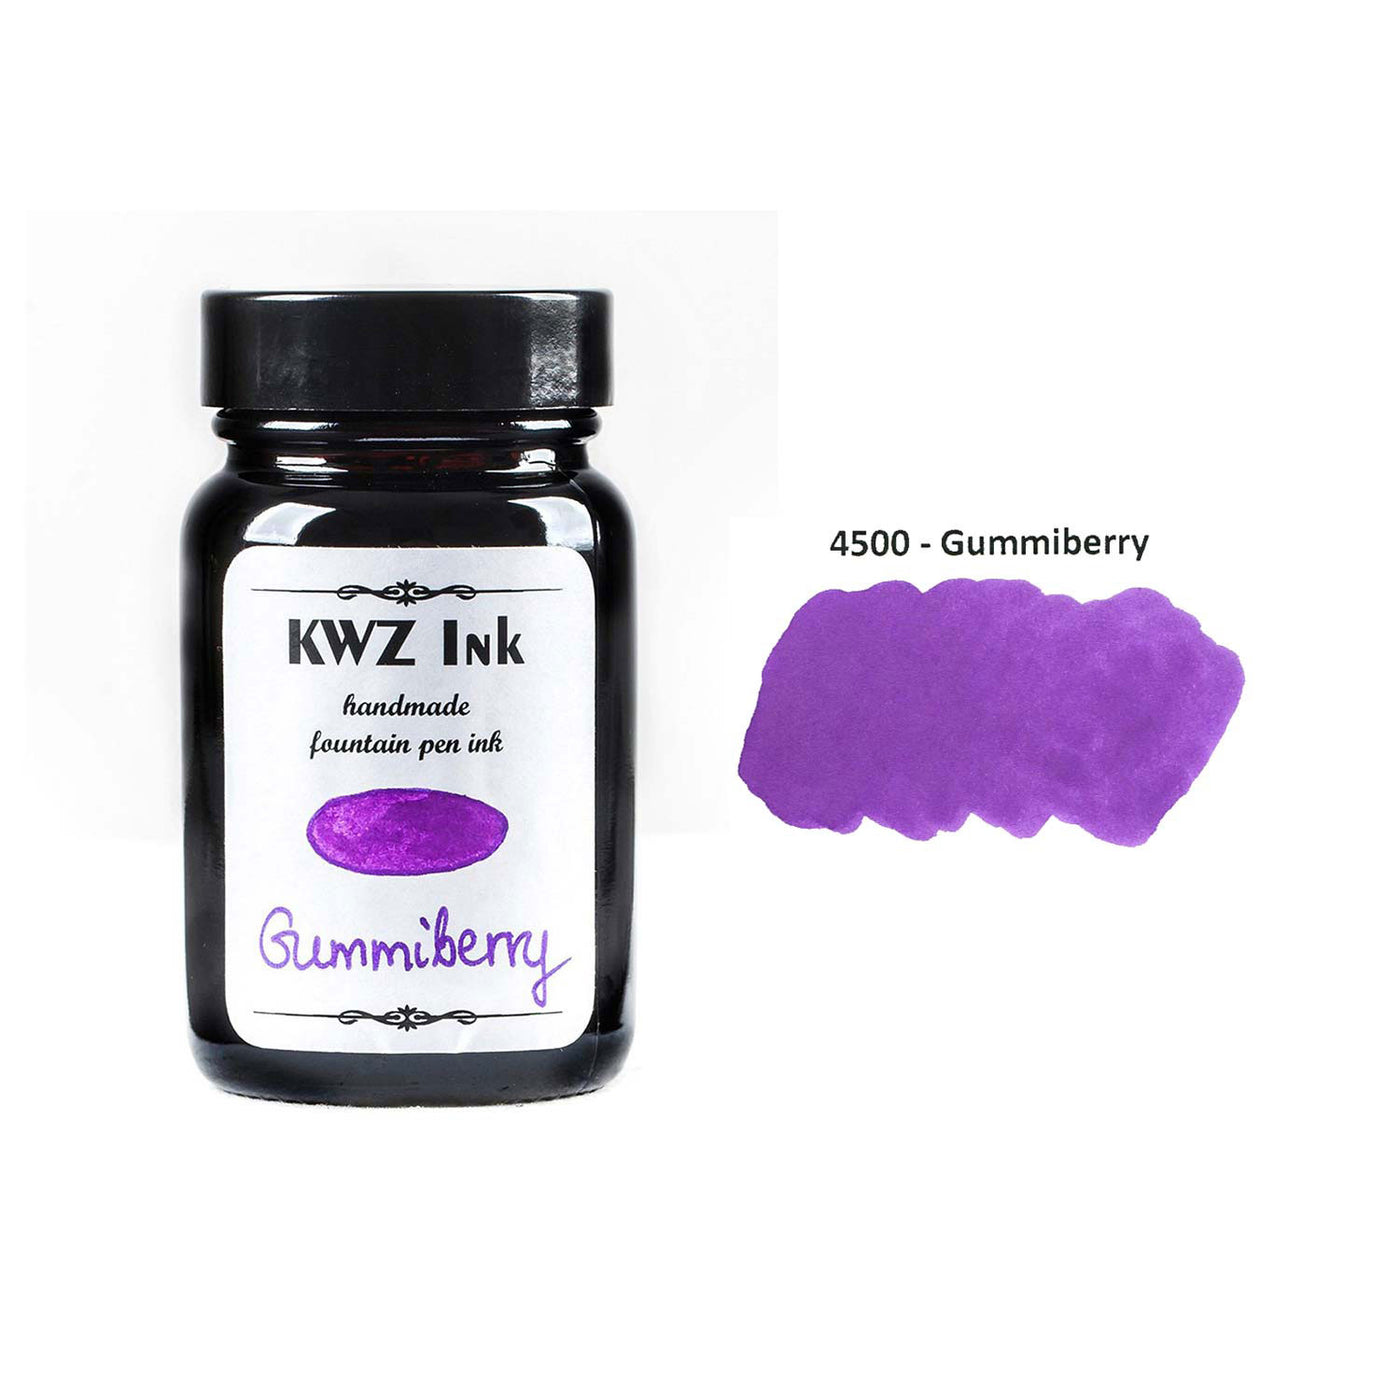 KWZ Standard Gummiberry Ink Bottle Violet - 60ml